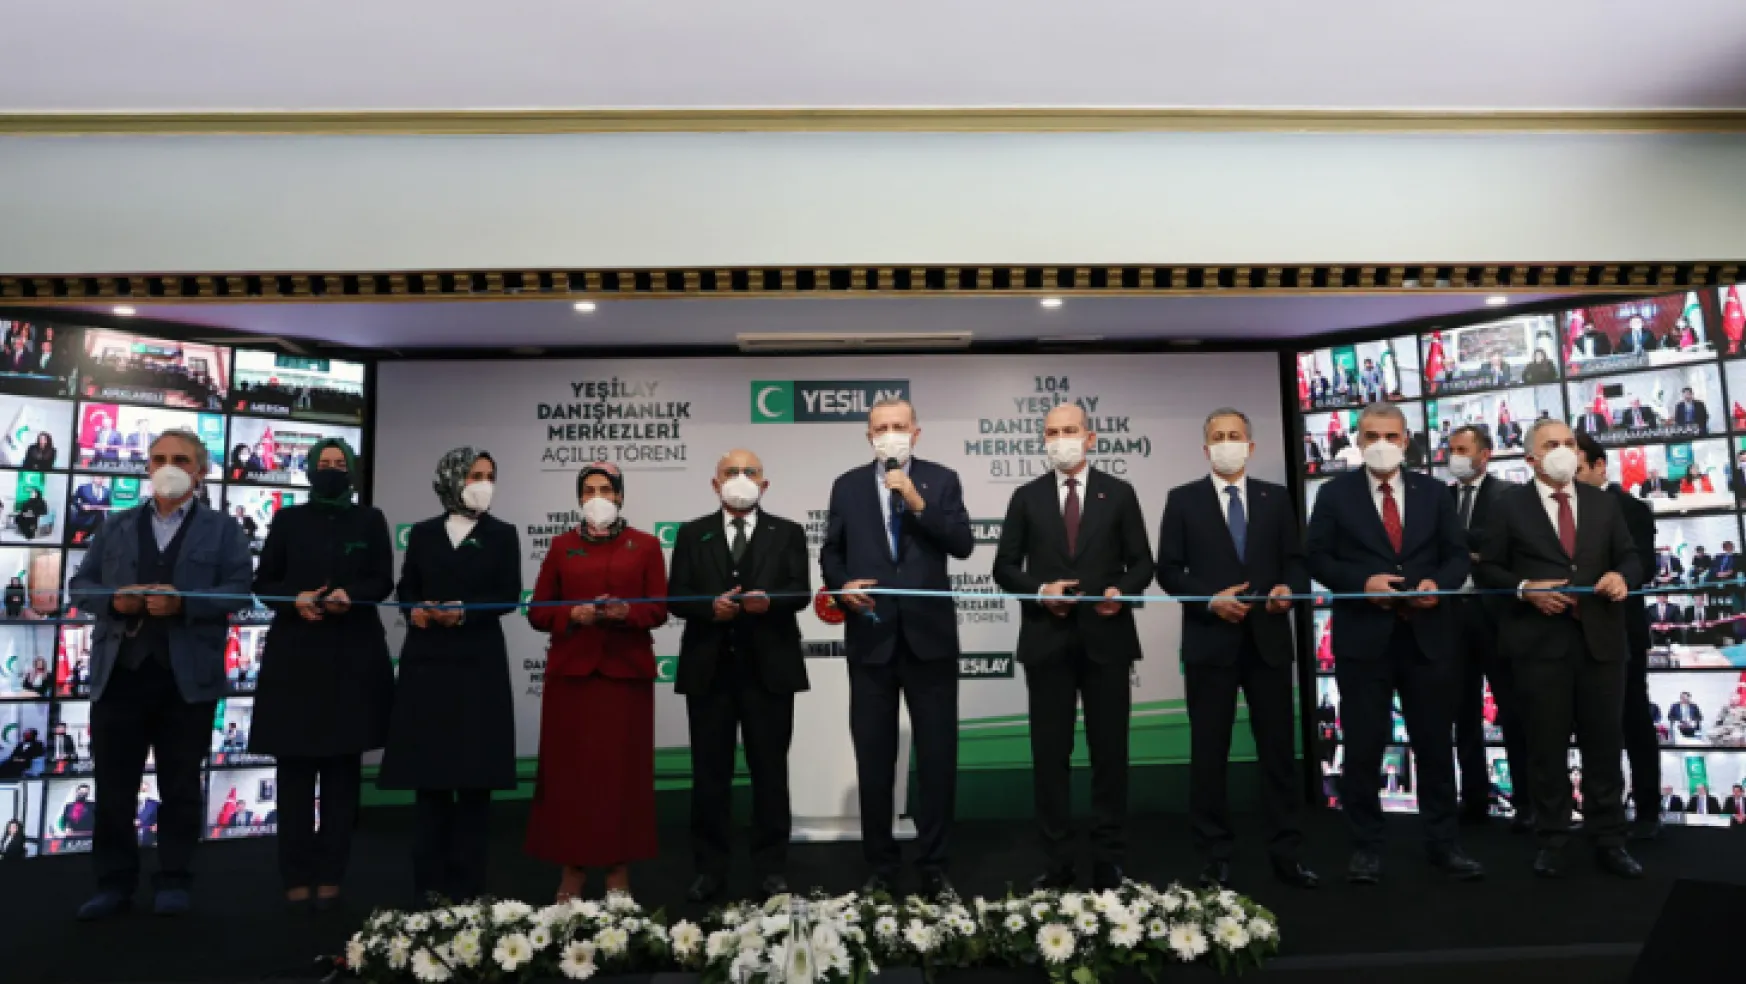 Cumhurbaşkanı Recep Tayyip Erdoğan, 104 Yeşilay Bağımlılık Destek Merkezi'nin Açılışını Gerçekleştirdi